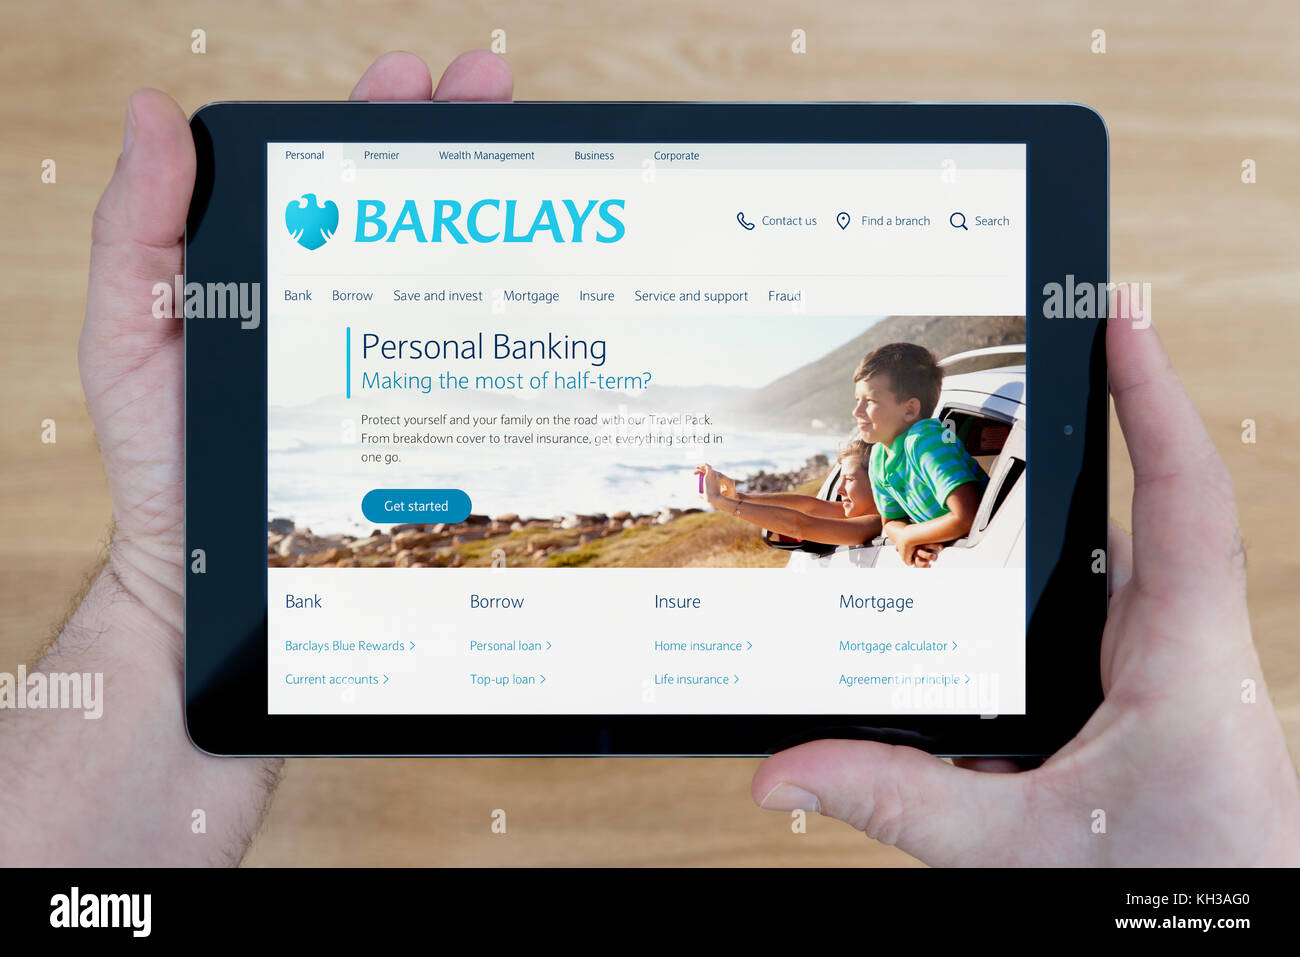 Un hombre se ve en el sitio web del banco Barclays en su iPad dispositivo tablet, disparó contra una mesa de madera fondo superior (uso Editorial solamente) Foto de stock